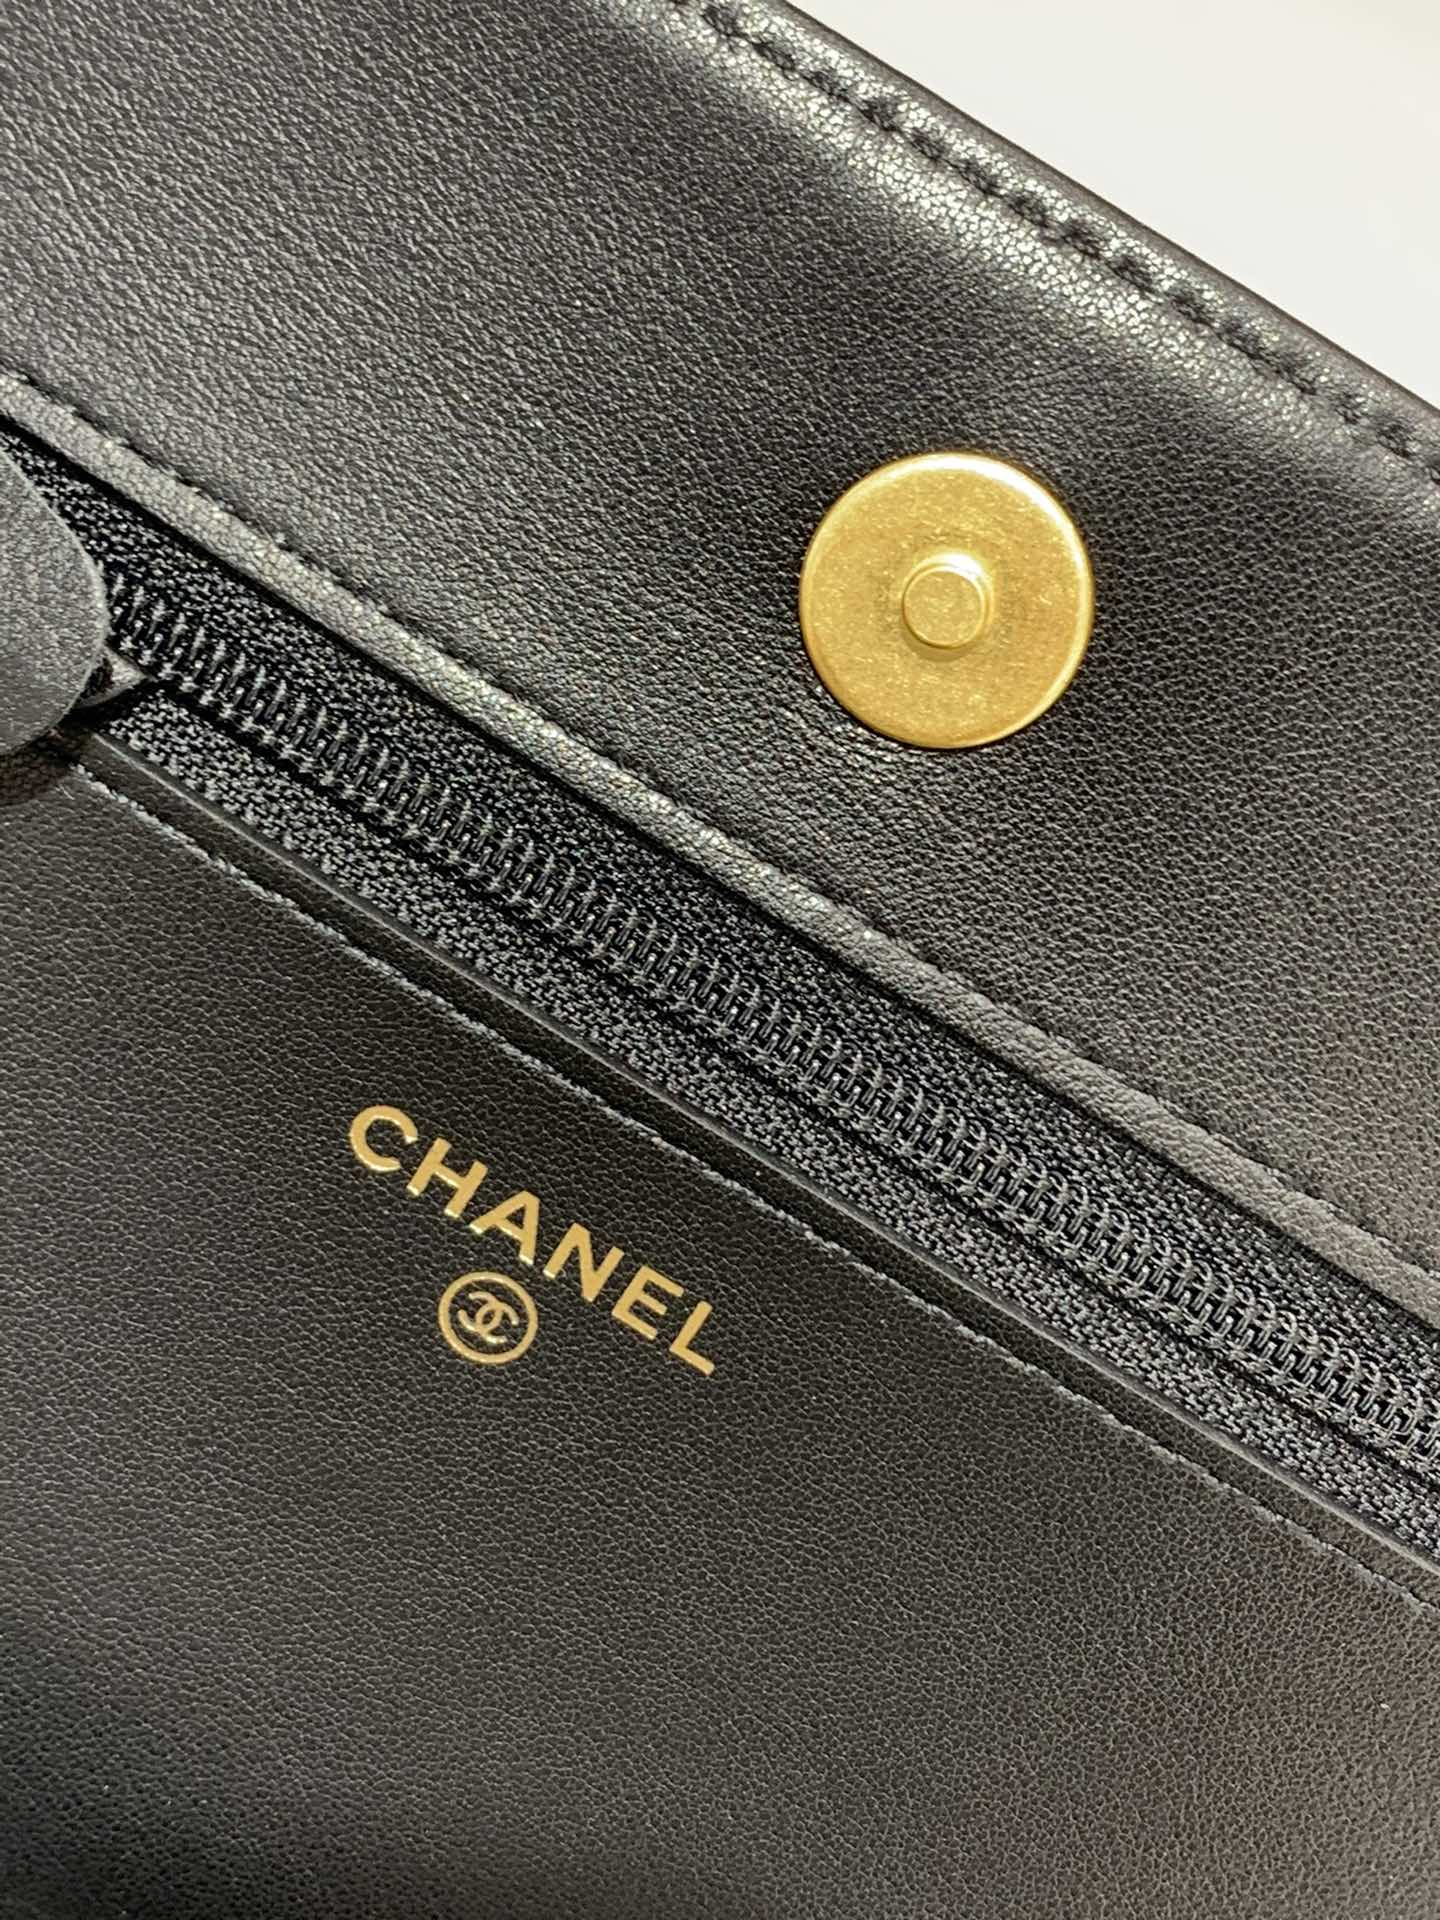 新版→吸扣版Leboy发财包 Chanel woc链条包 全套包装 19.5*12*3.5